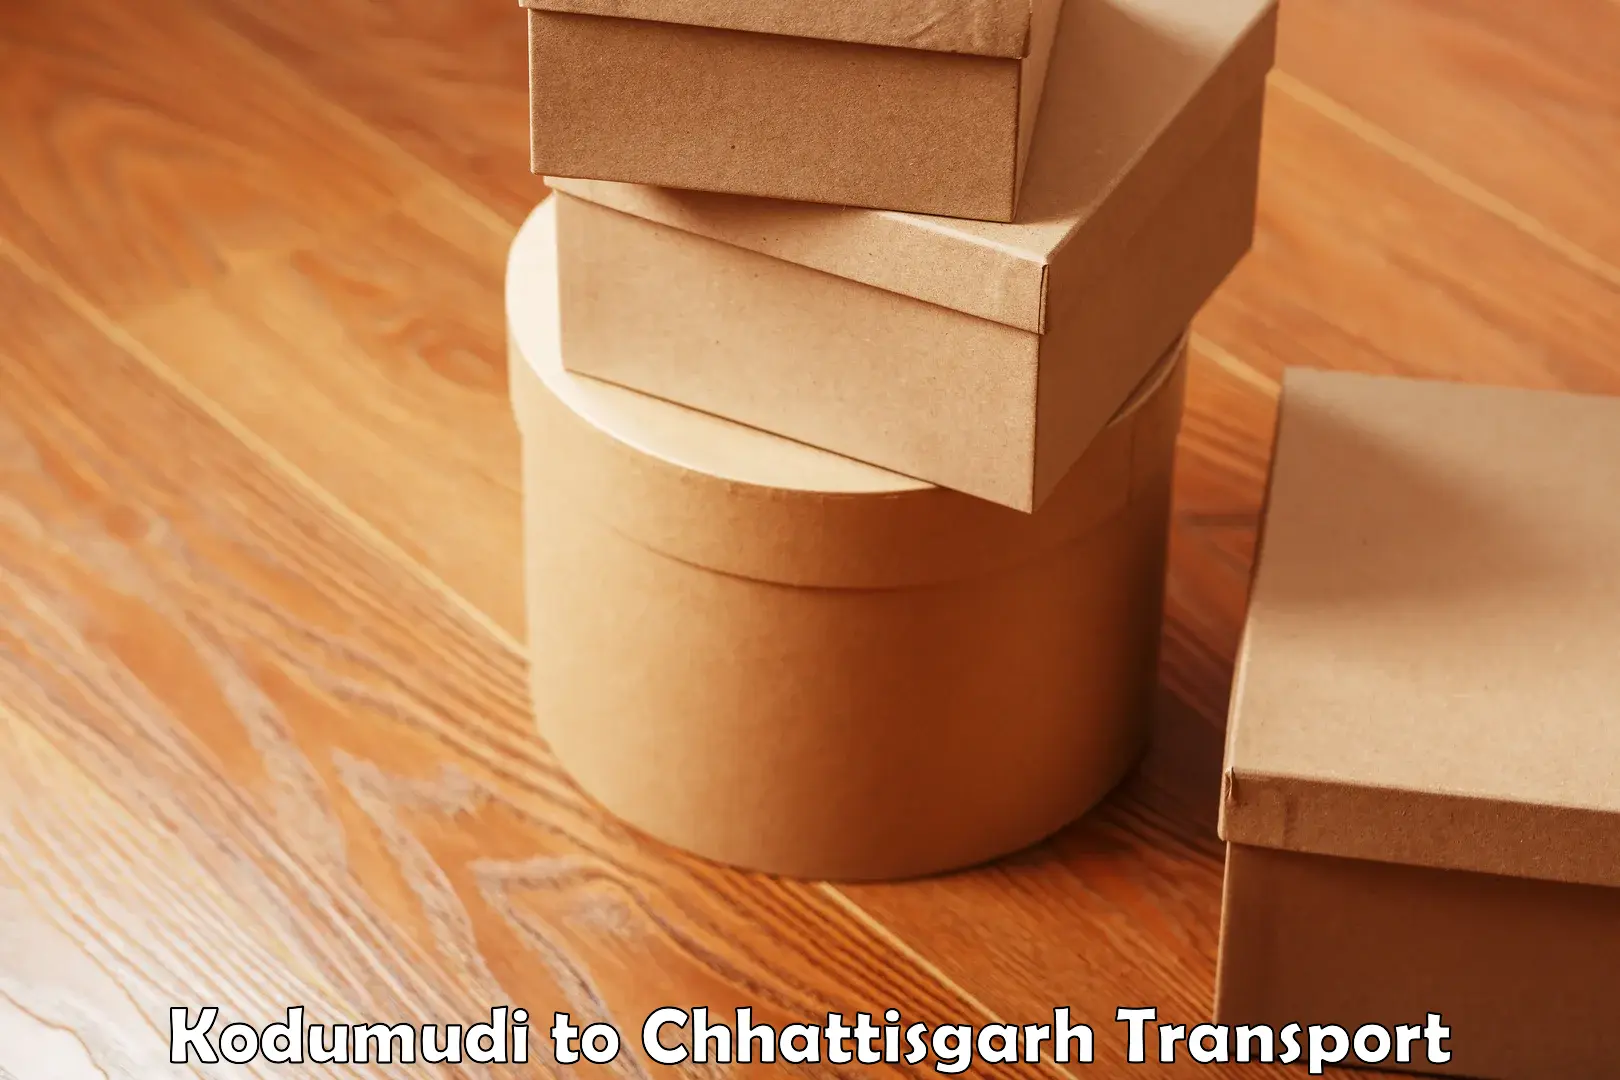 Goods delivery service Kodumudi to Chhattisgarh